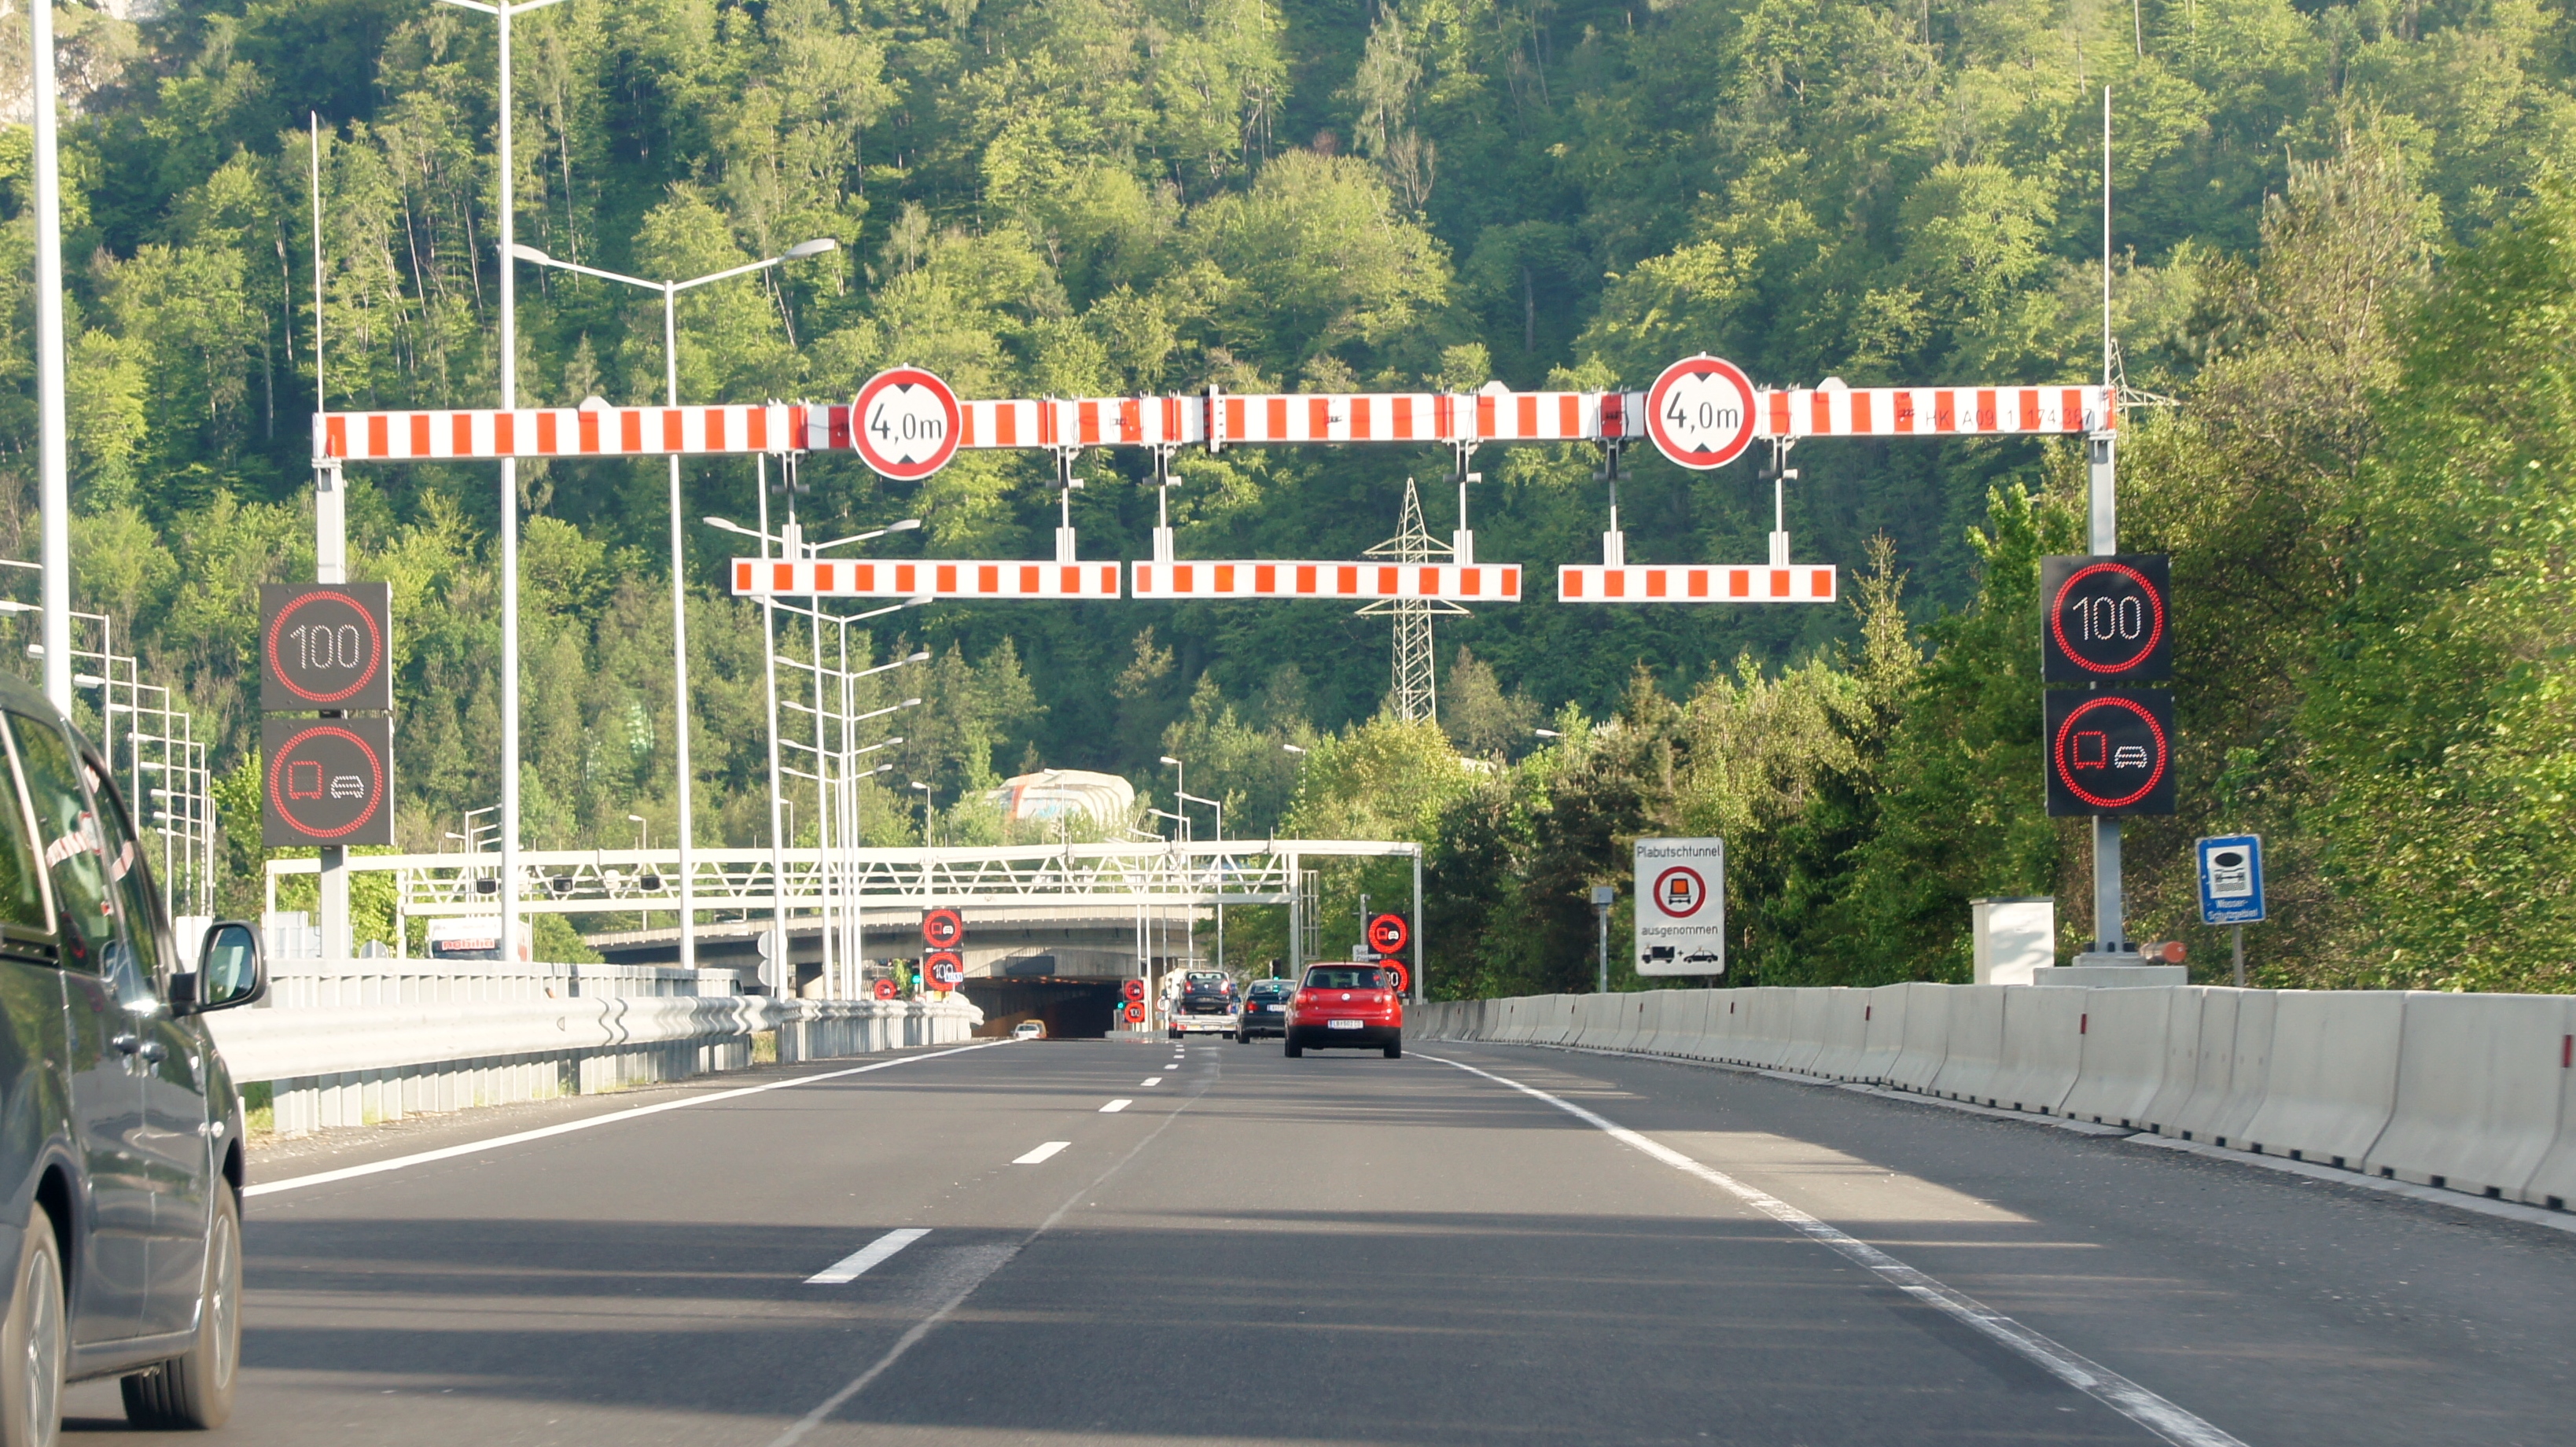 Figura 2: Señales de restricción de altura y pórticos de protección en la carretera de acceso a un túnel en Austria